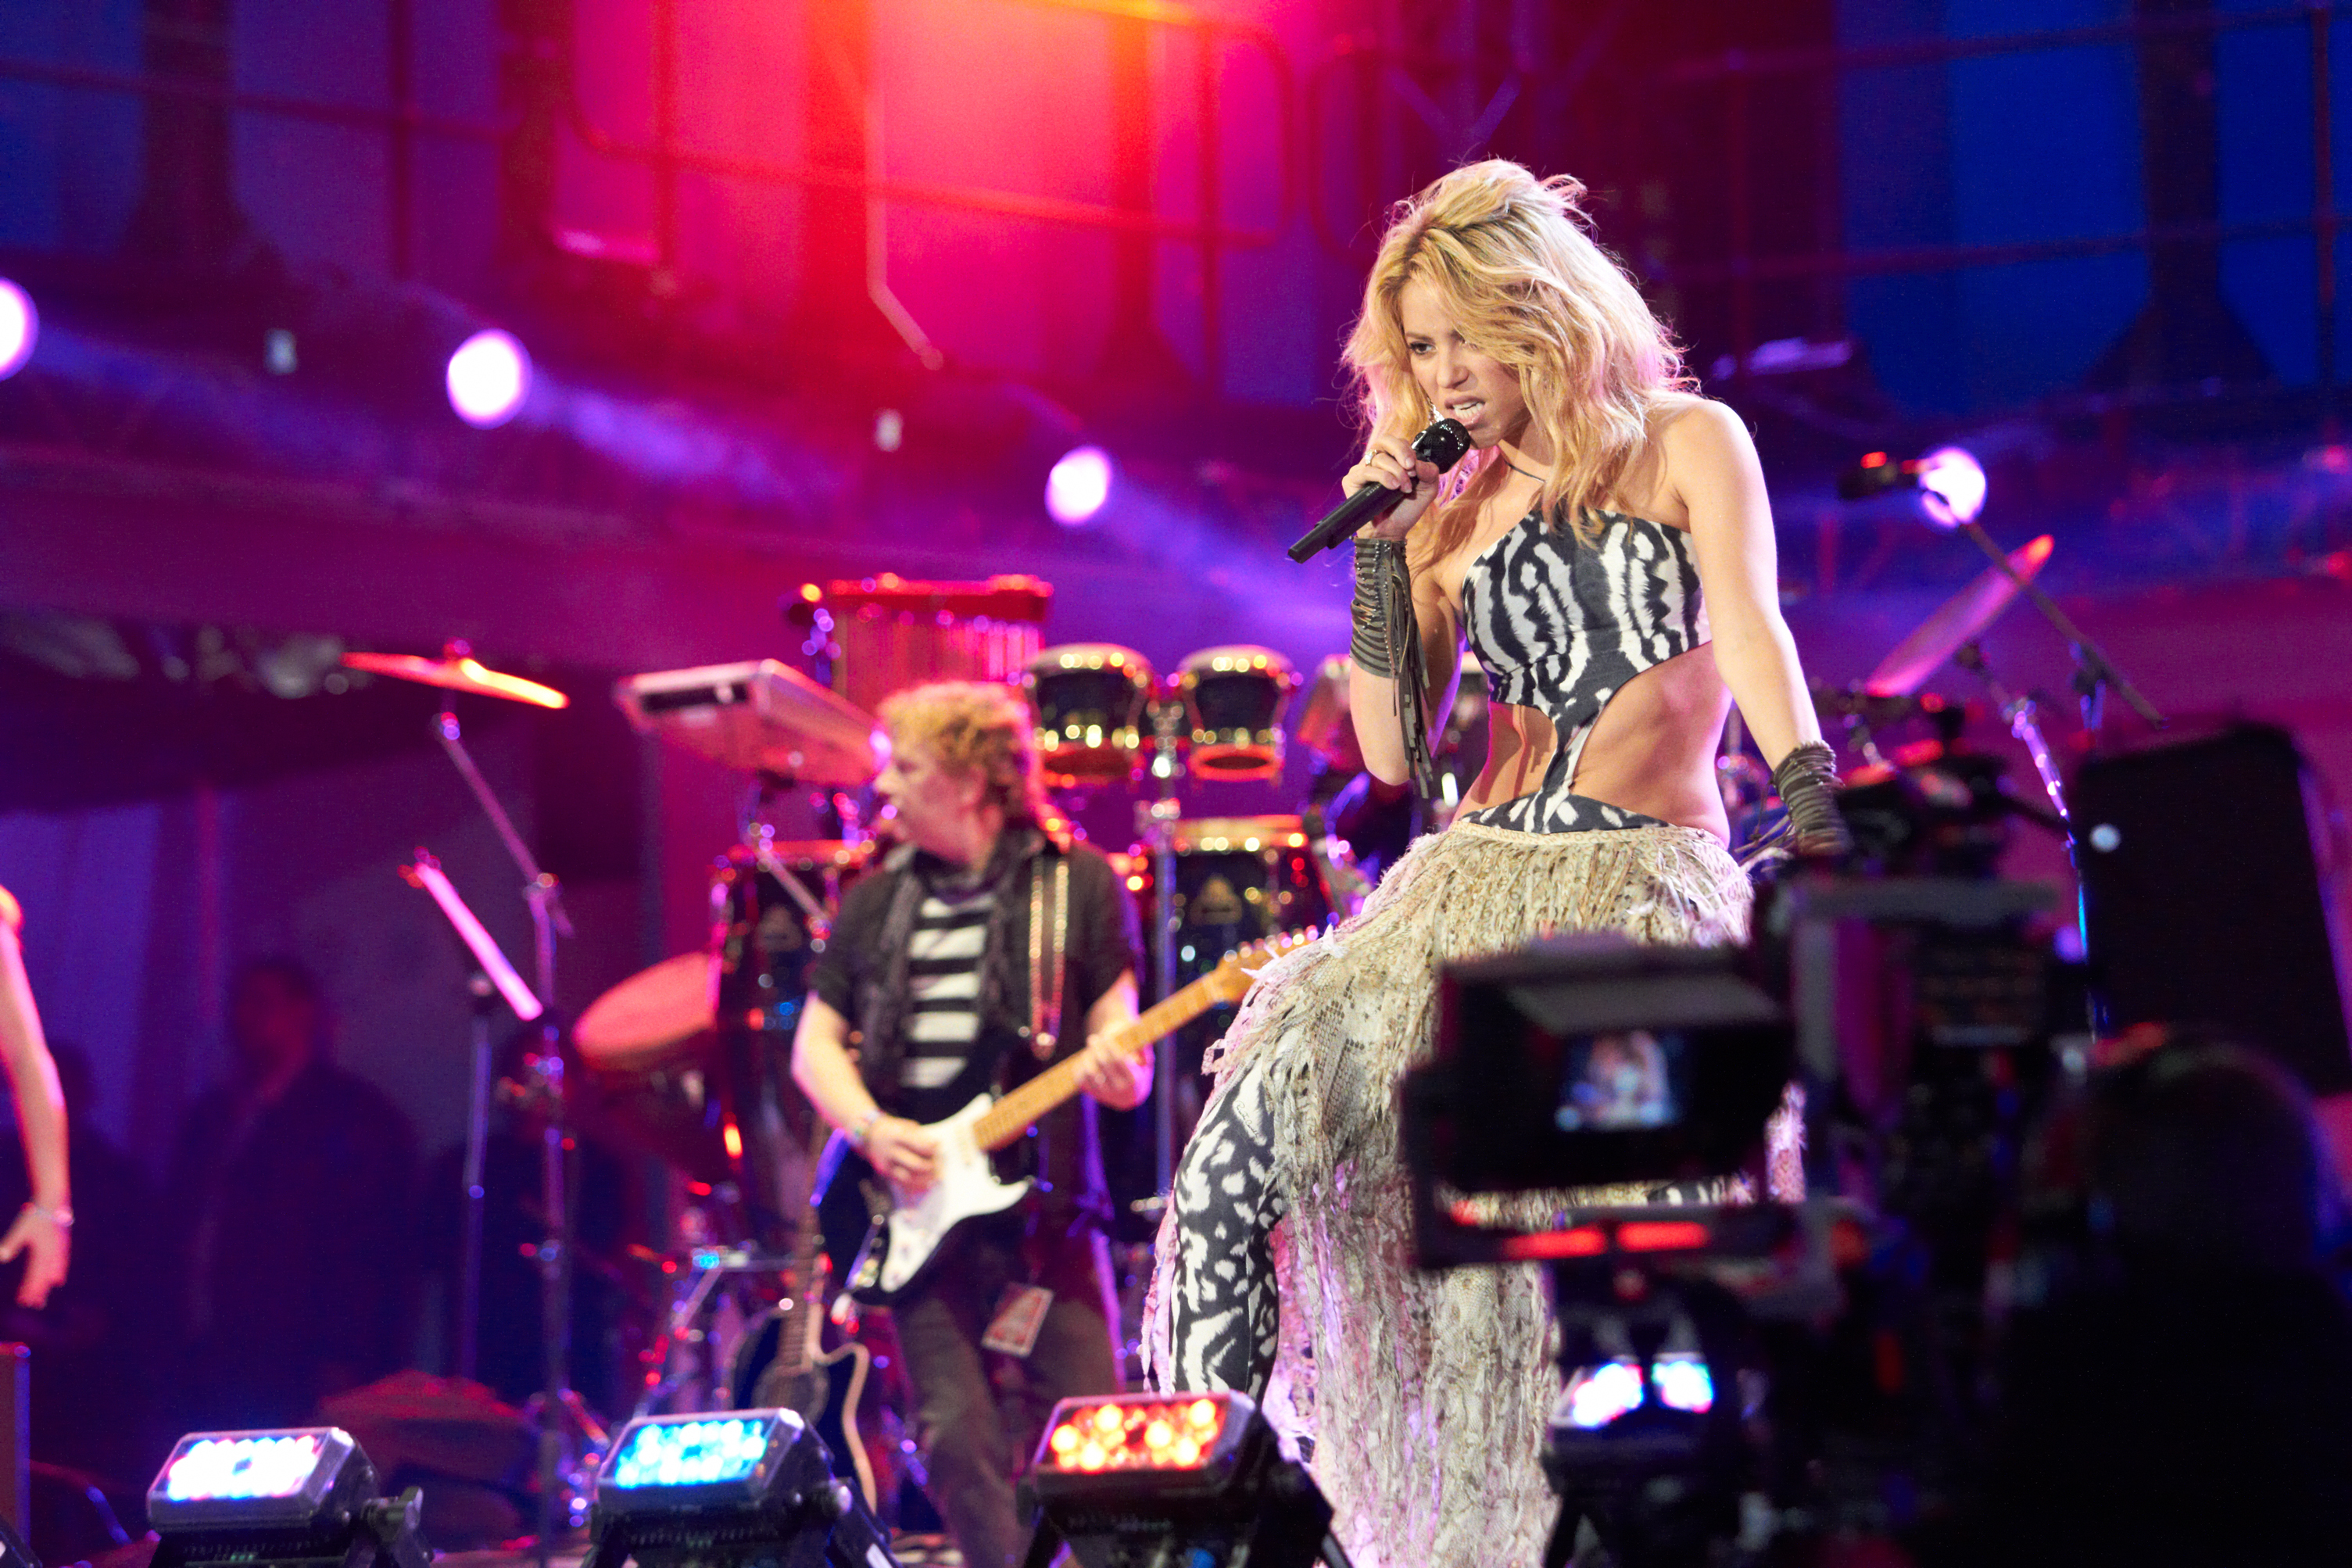 El año pasado, Shakira y Carlos Vives fueron denunciados por plagio. (Foto Prensa Libre: Shutterstock)